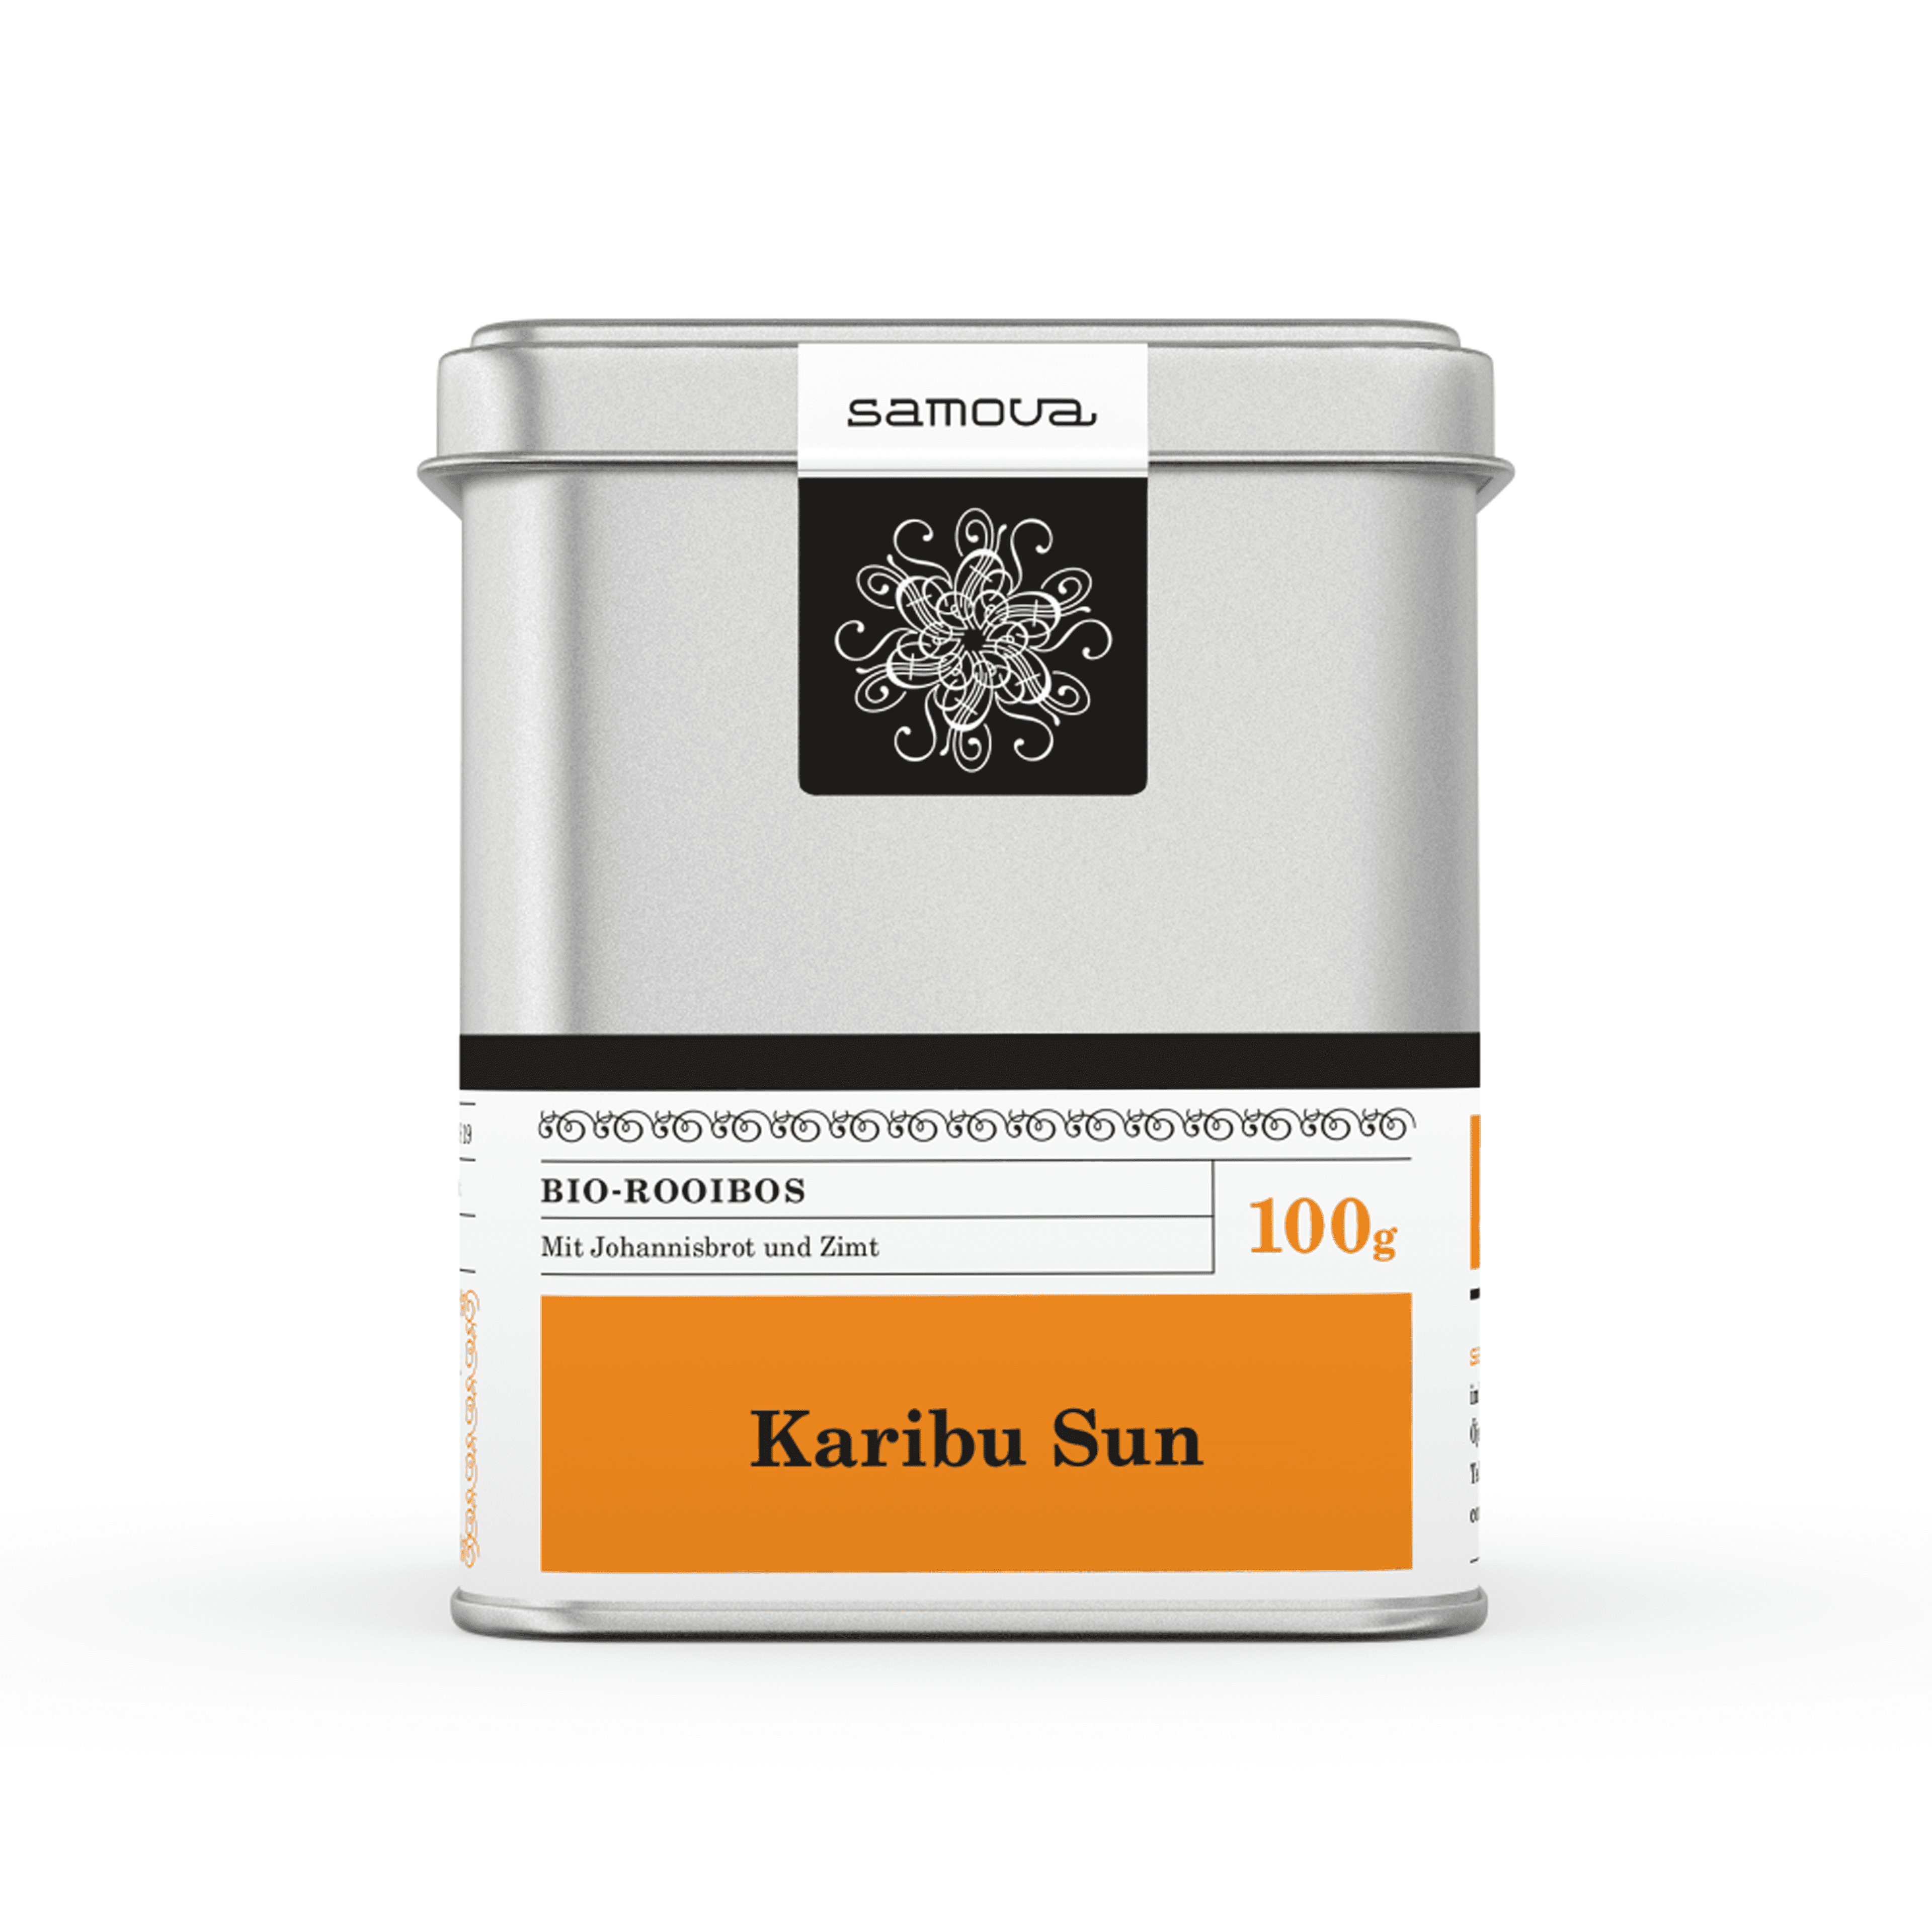 Canette de Karibu Sun tea